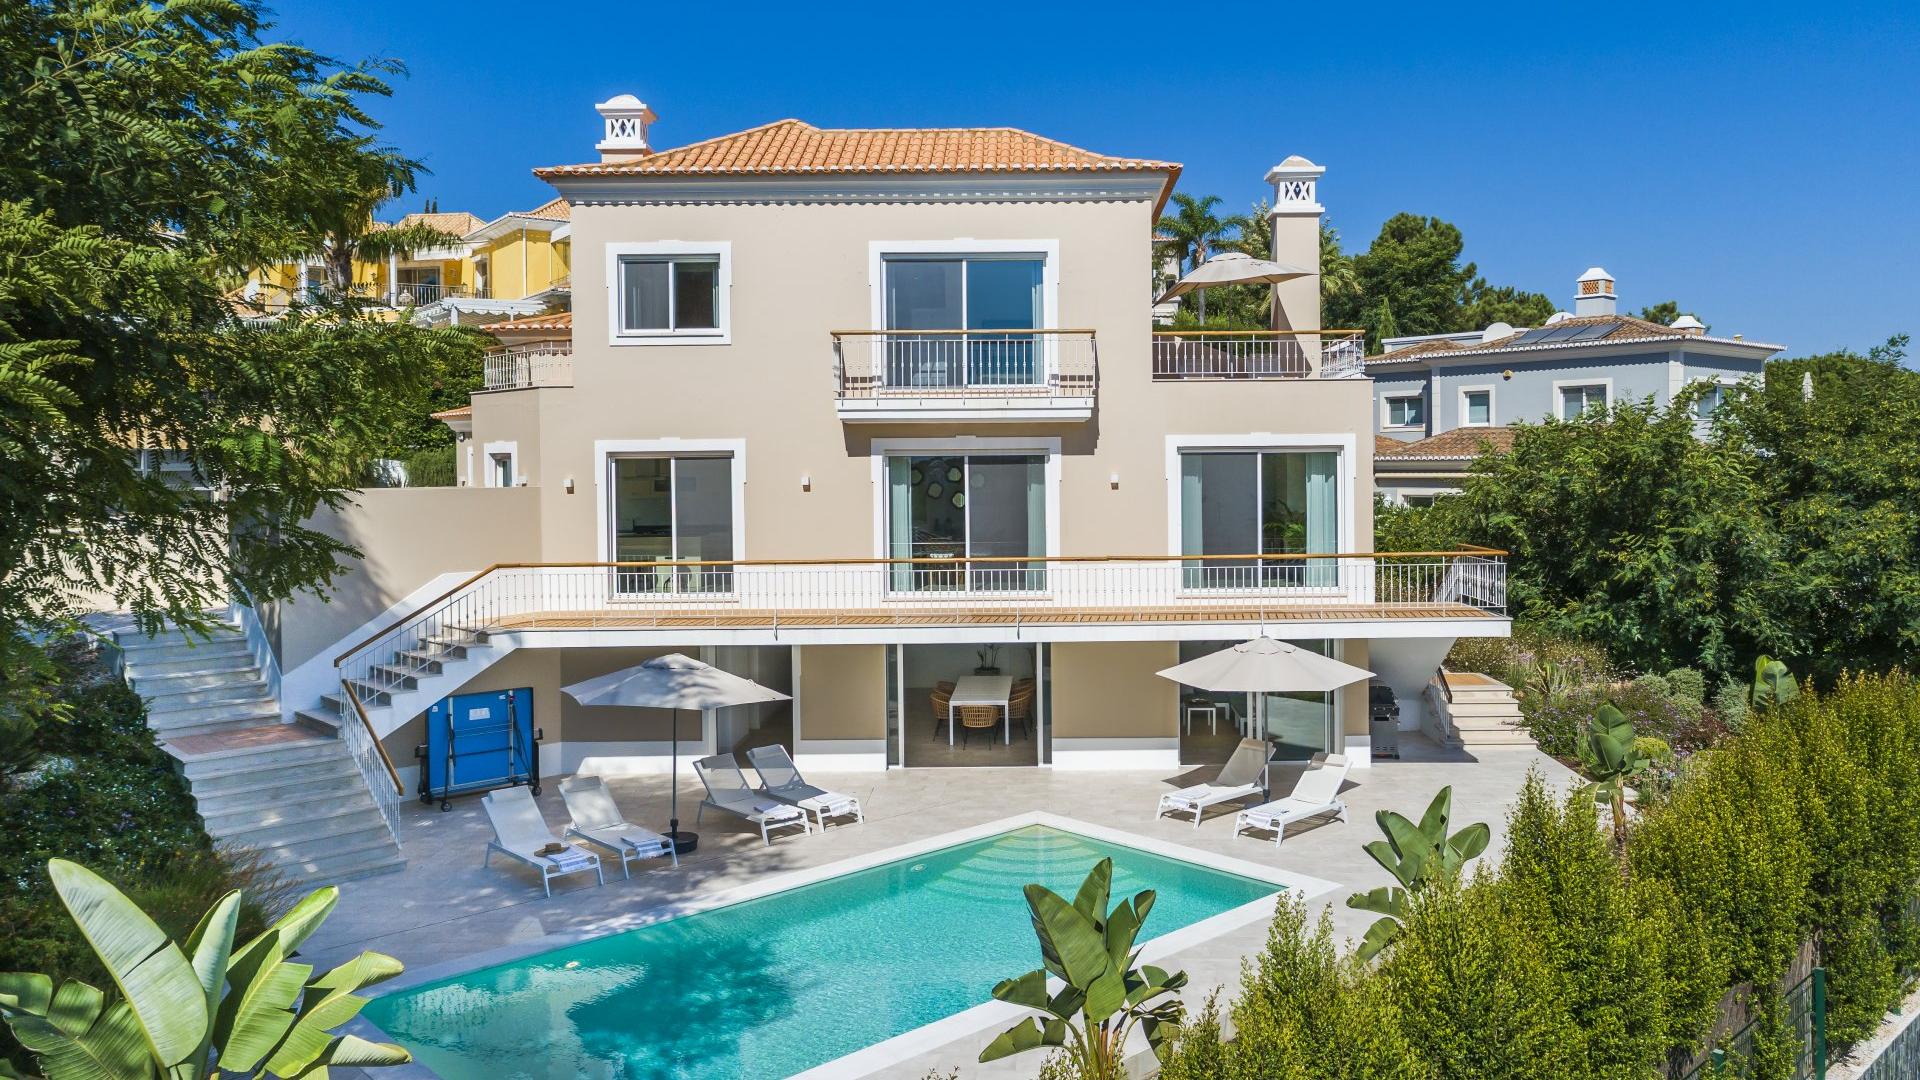 Villa Villa Pacifica, Rental in Algarve